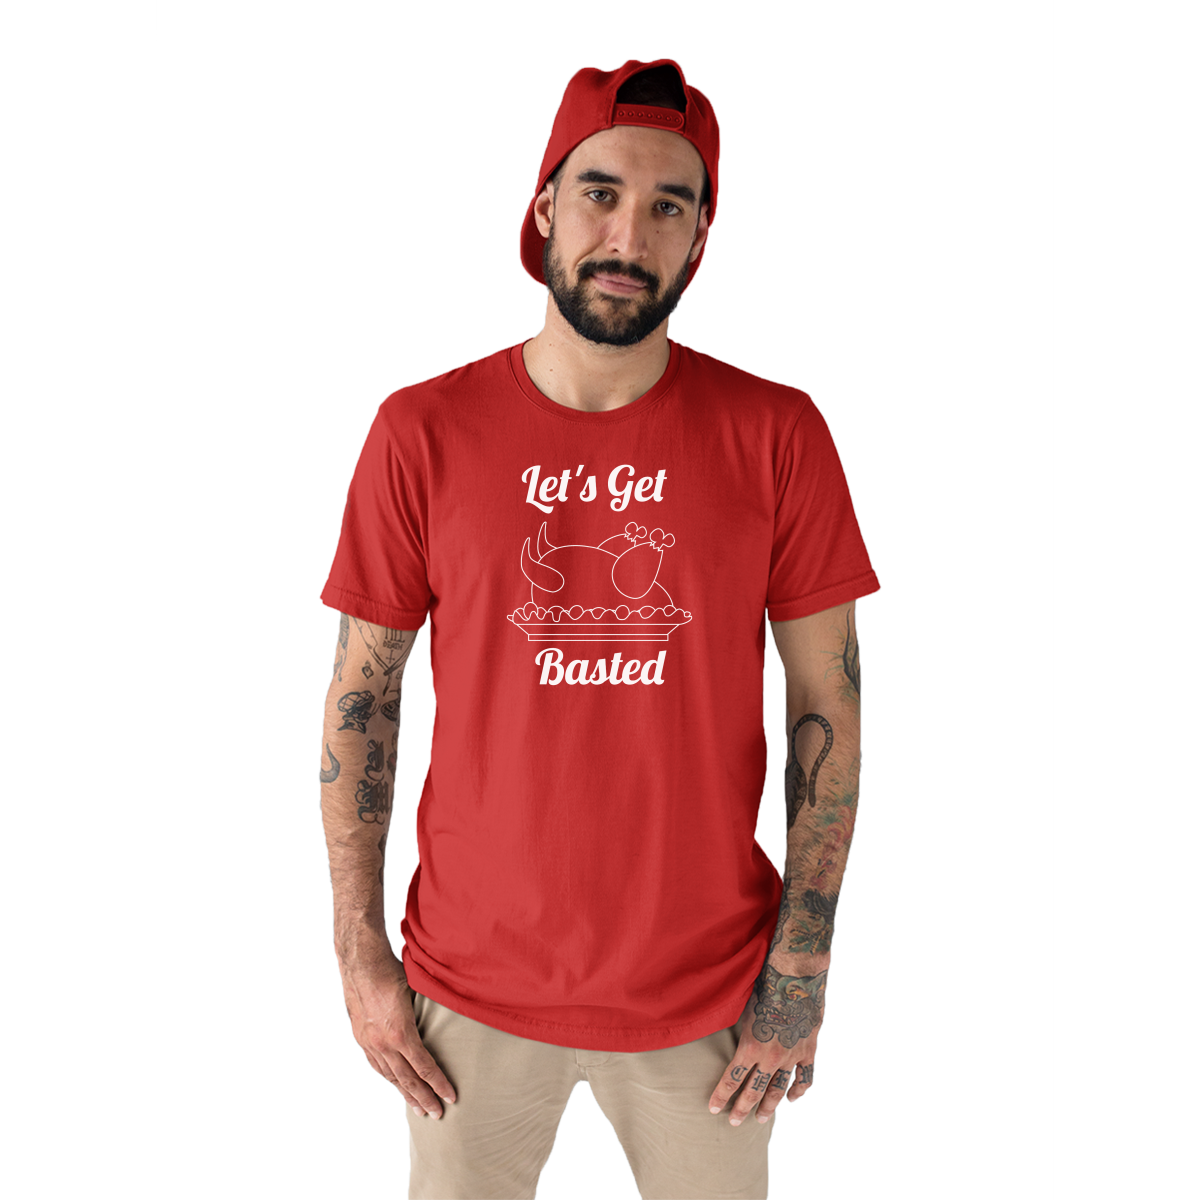 Let's Get Basted Men's T-shirt | Red